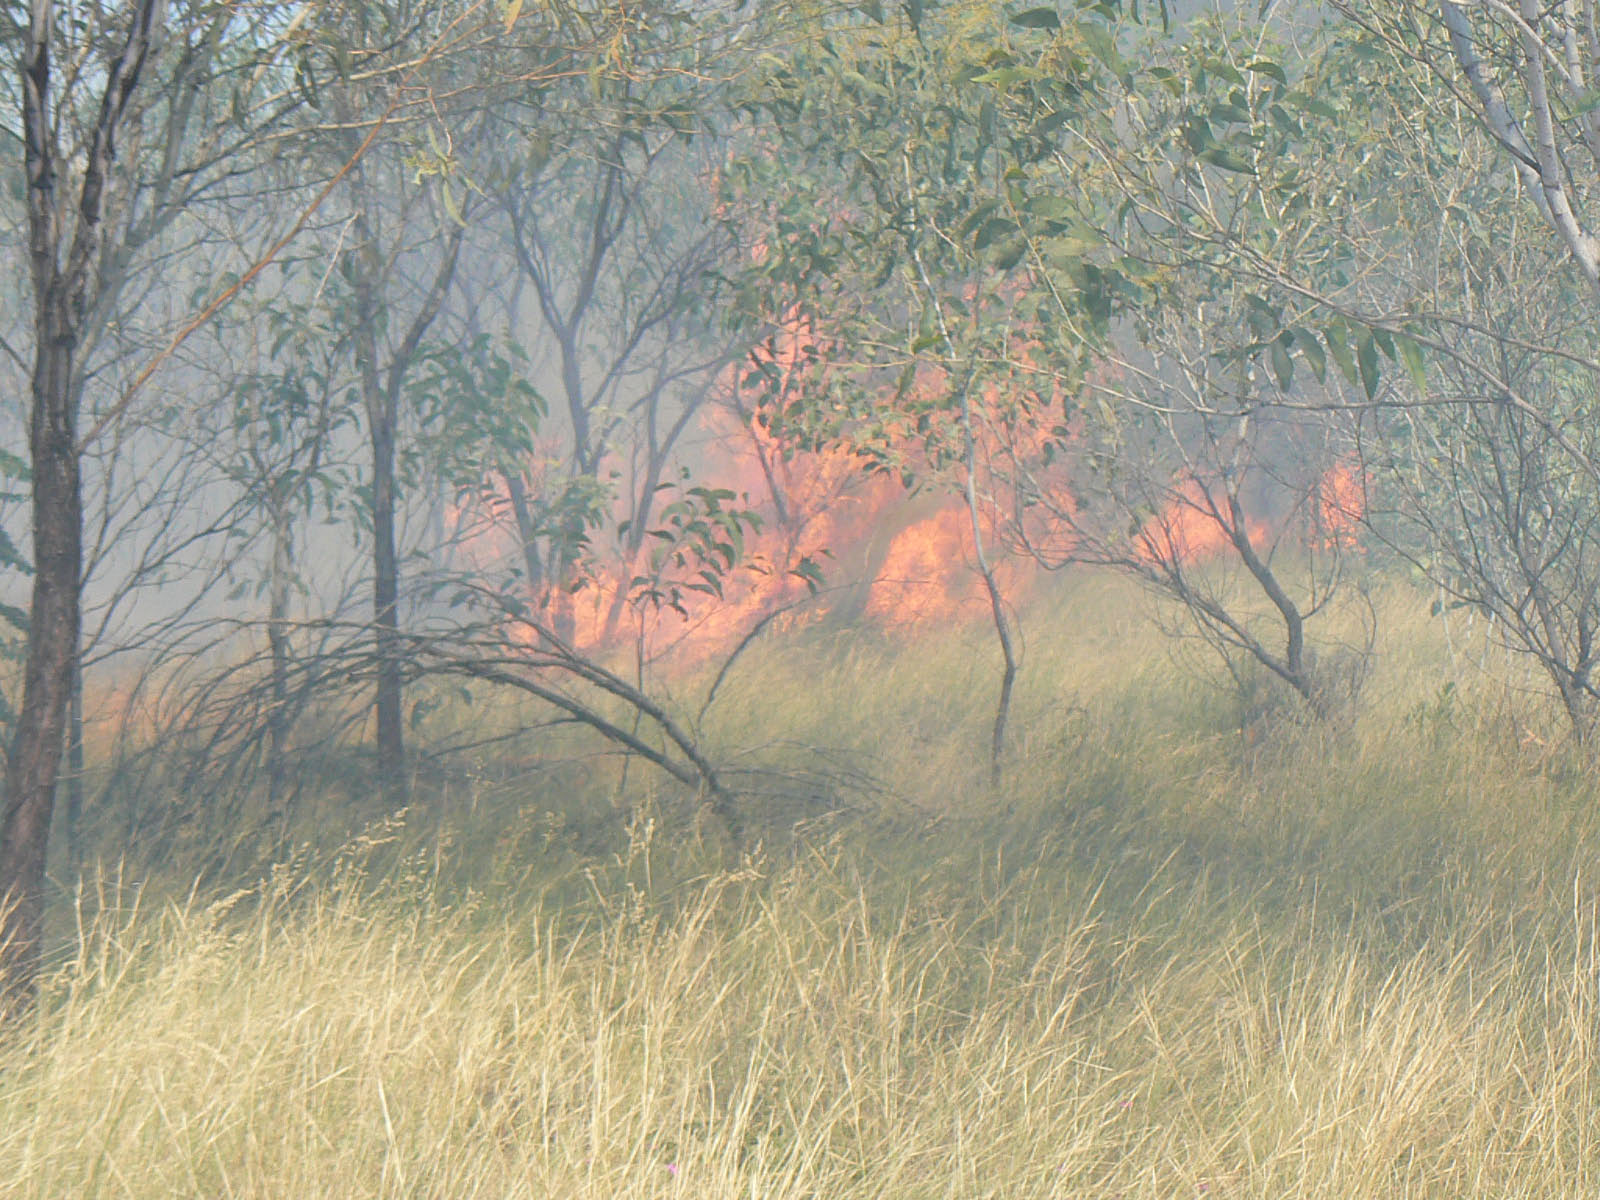 AUSTRALIE - feu dans le bush (les eucalyptus ont une protection naturelle contre les incendies - pelade de l'ecorce)